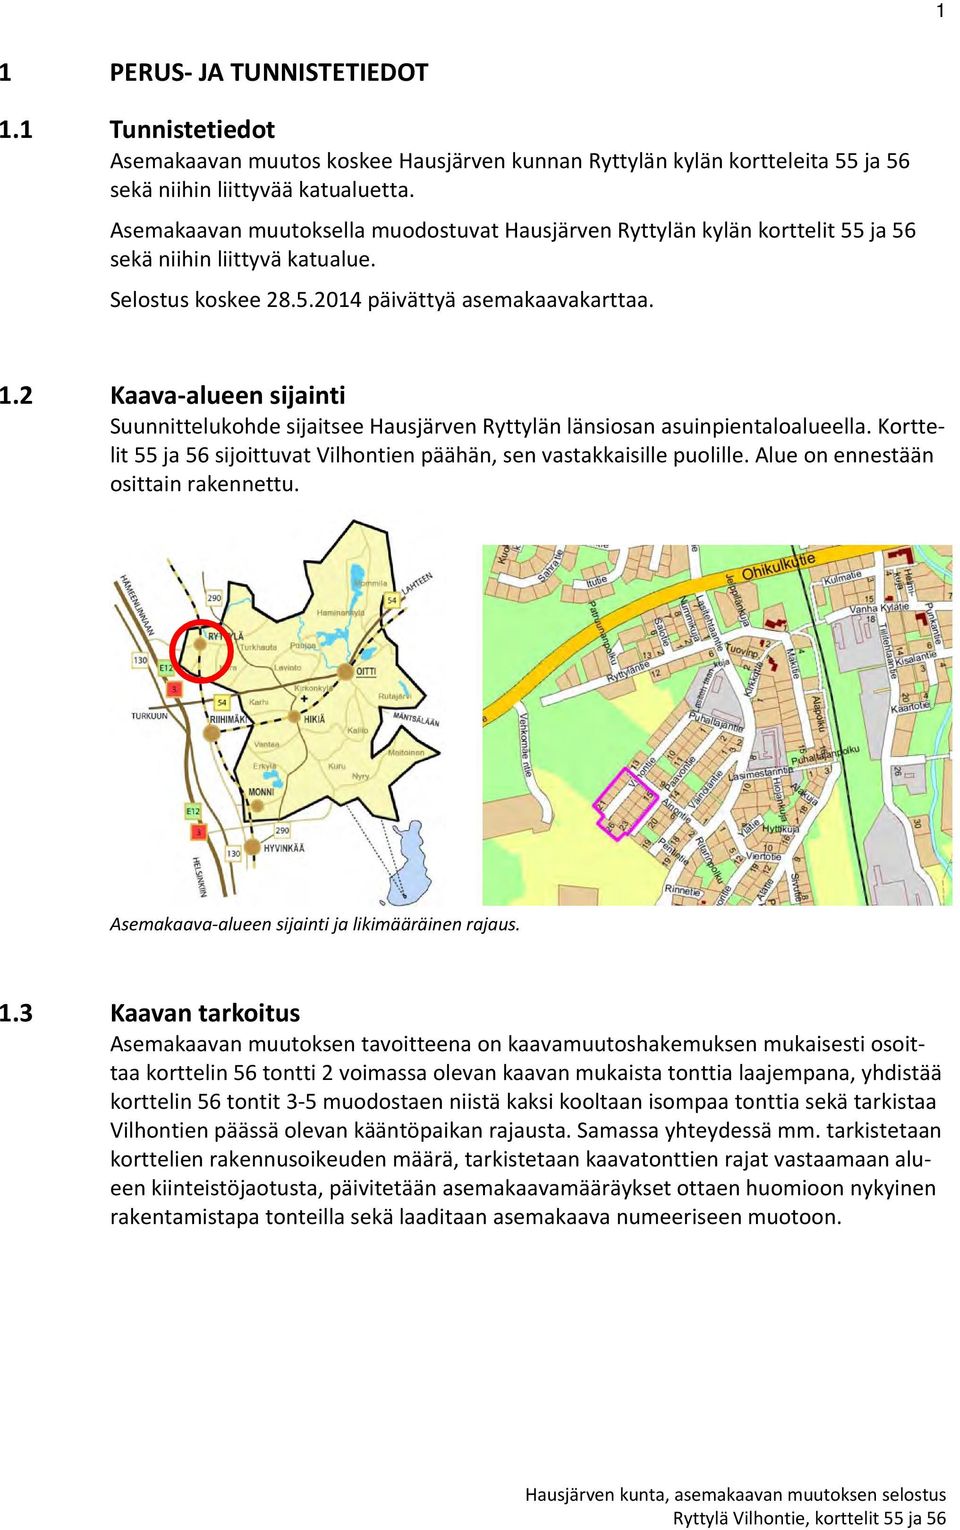 2 Kaava alueen sijainti Suunnittelukohde sijaitsee Hausjärven Ryttylän länsiosan asuinpientaloalueella. Korttelit 55 ja 56 sijoittuvat Vilhontien päähän, sen vastakkaisille puolille.